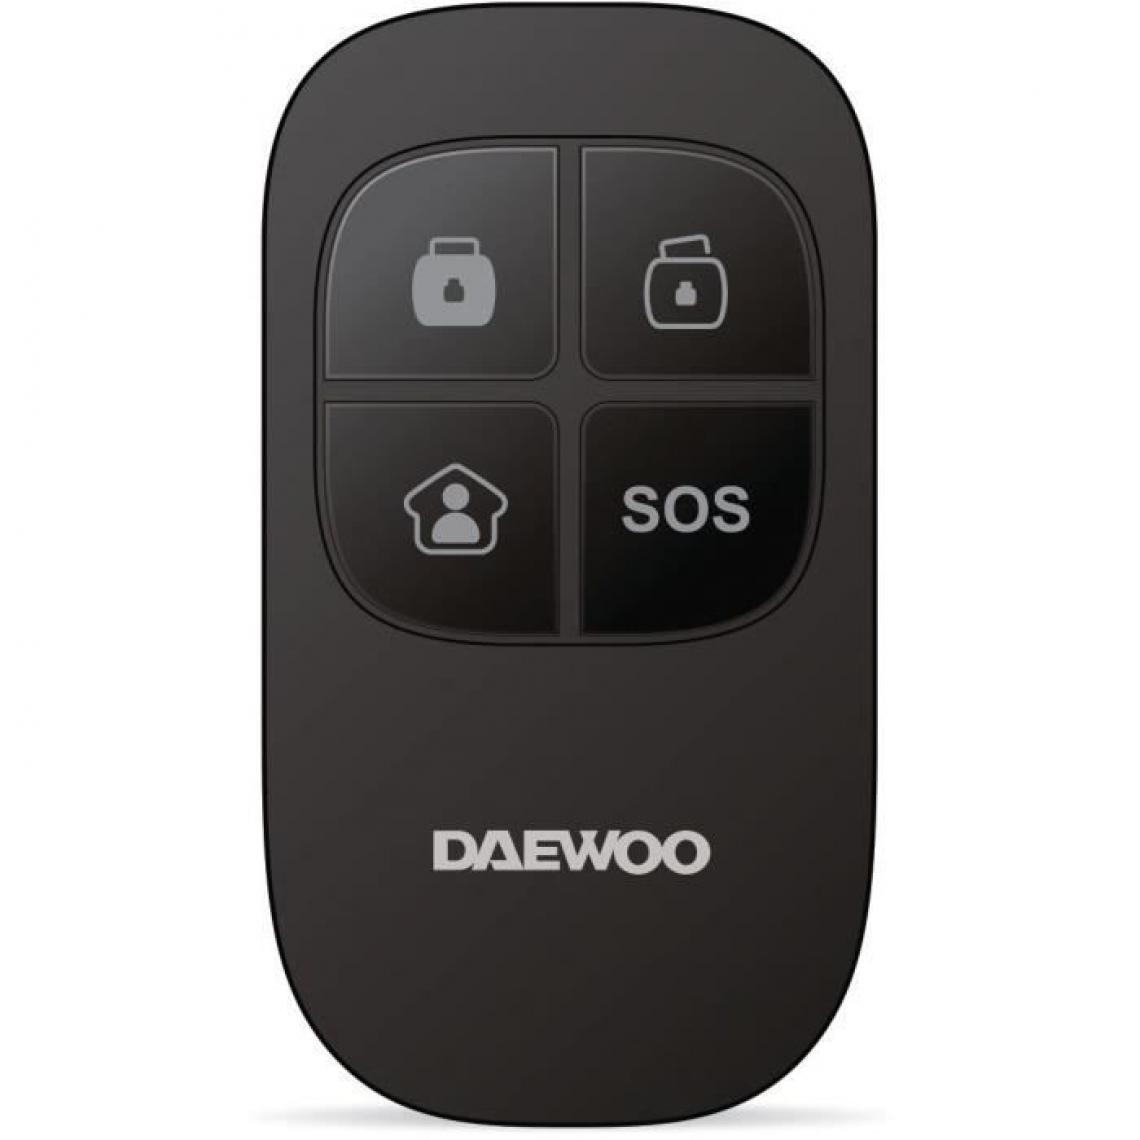 Daewoo - DAEWOO Télécommande WRC501 pour systeme d'alarme SA501 - Accessoires sécurité connectée